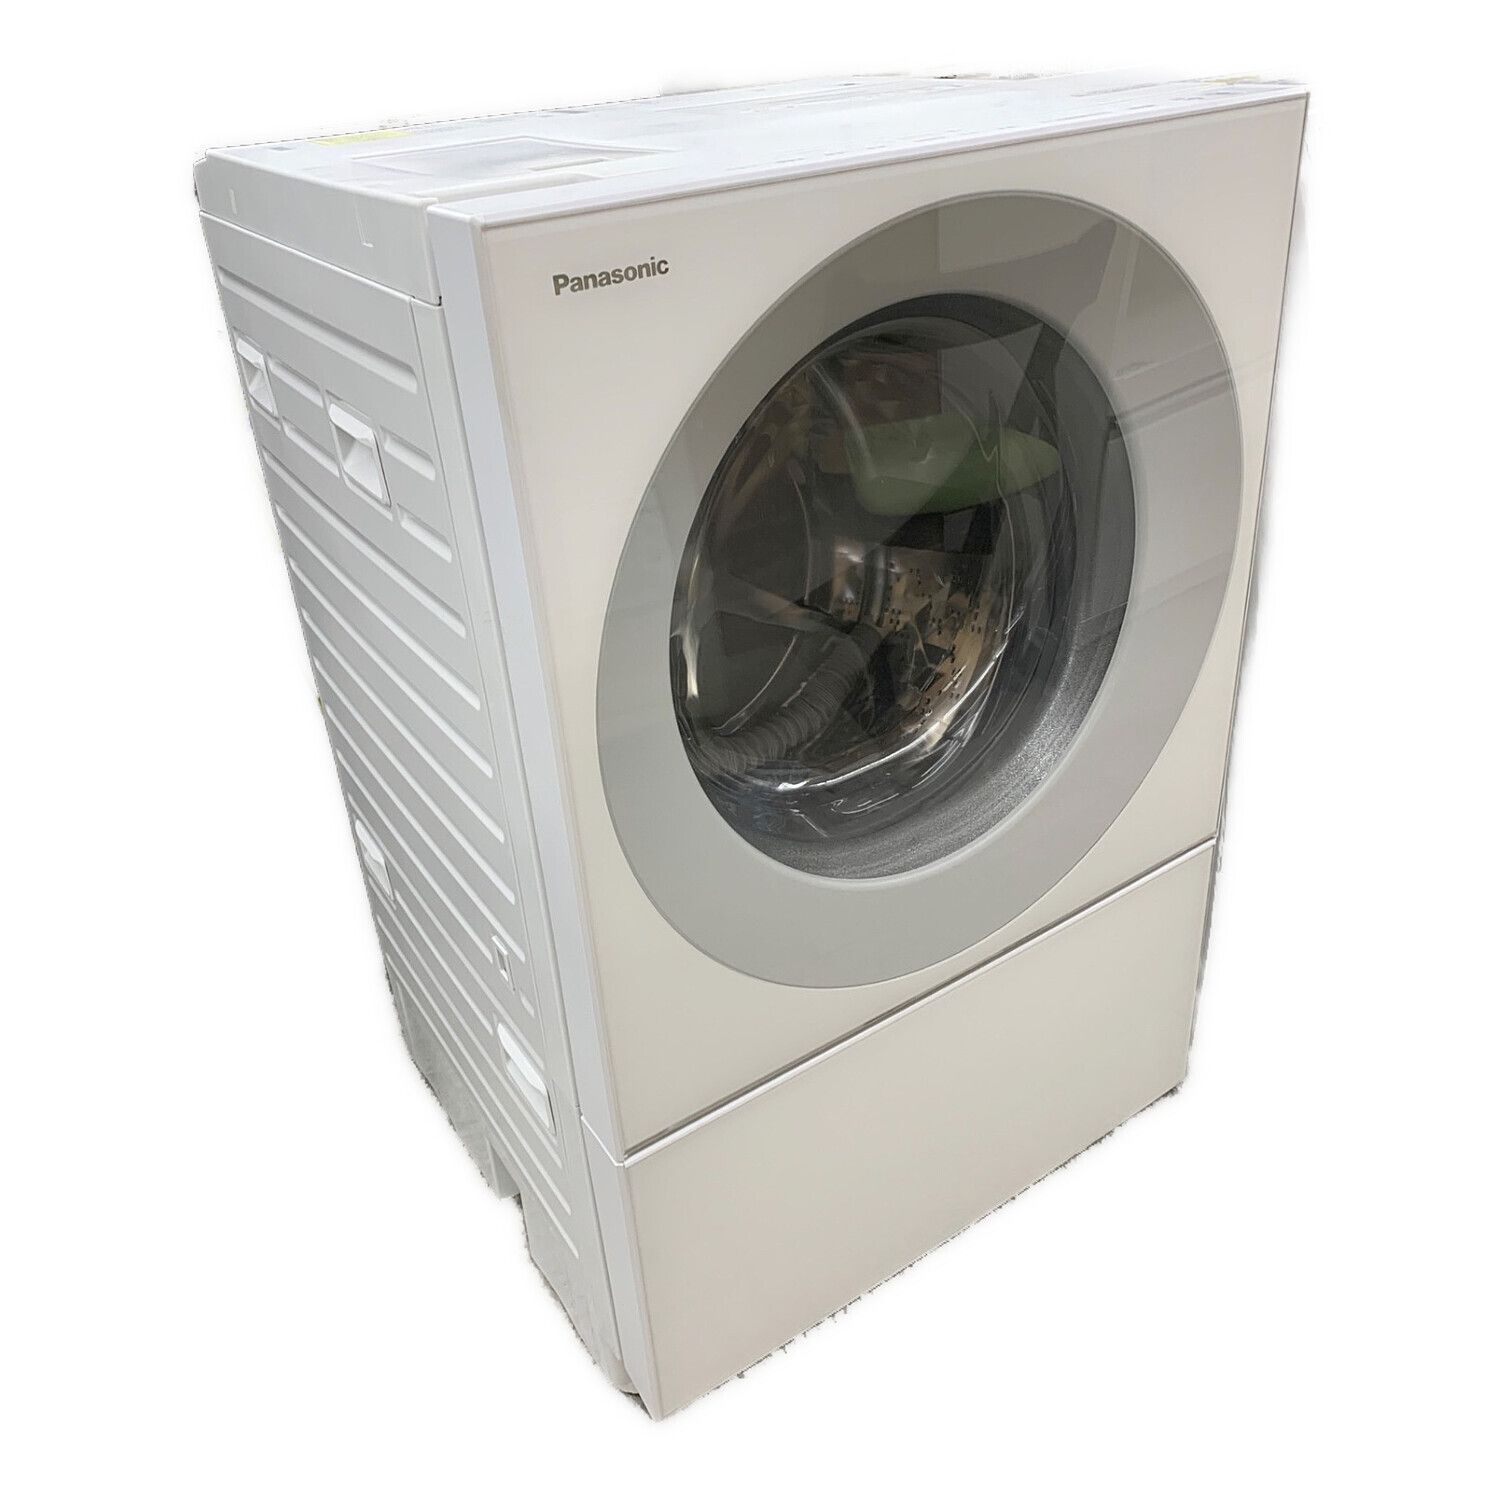 Panasonic　NA-VS1000L 　10キロ ドラム式洗濯機　2015年こちらまだありますでしょうか